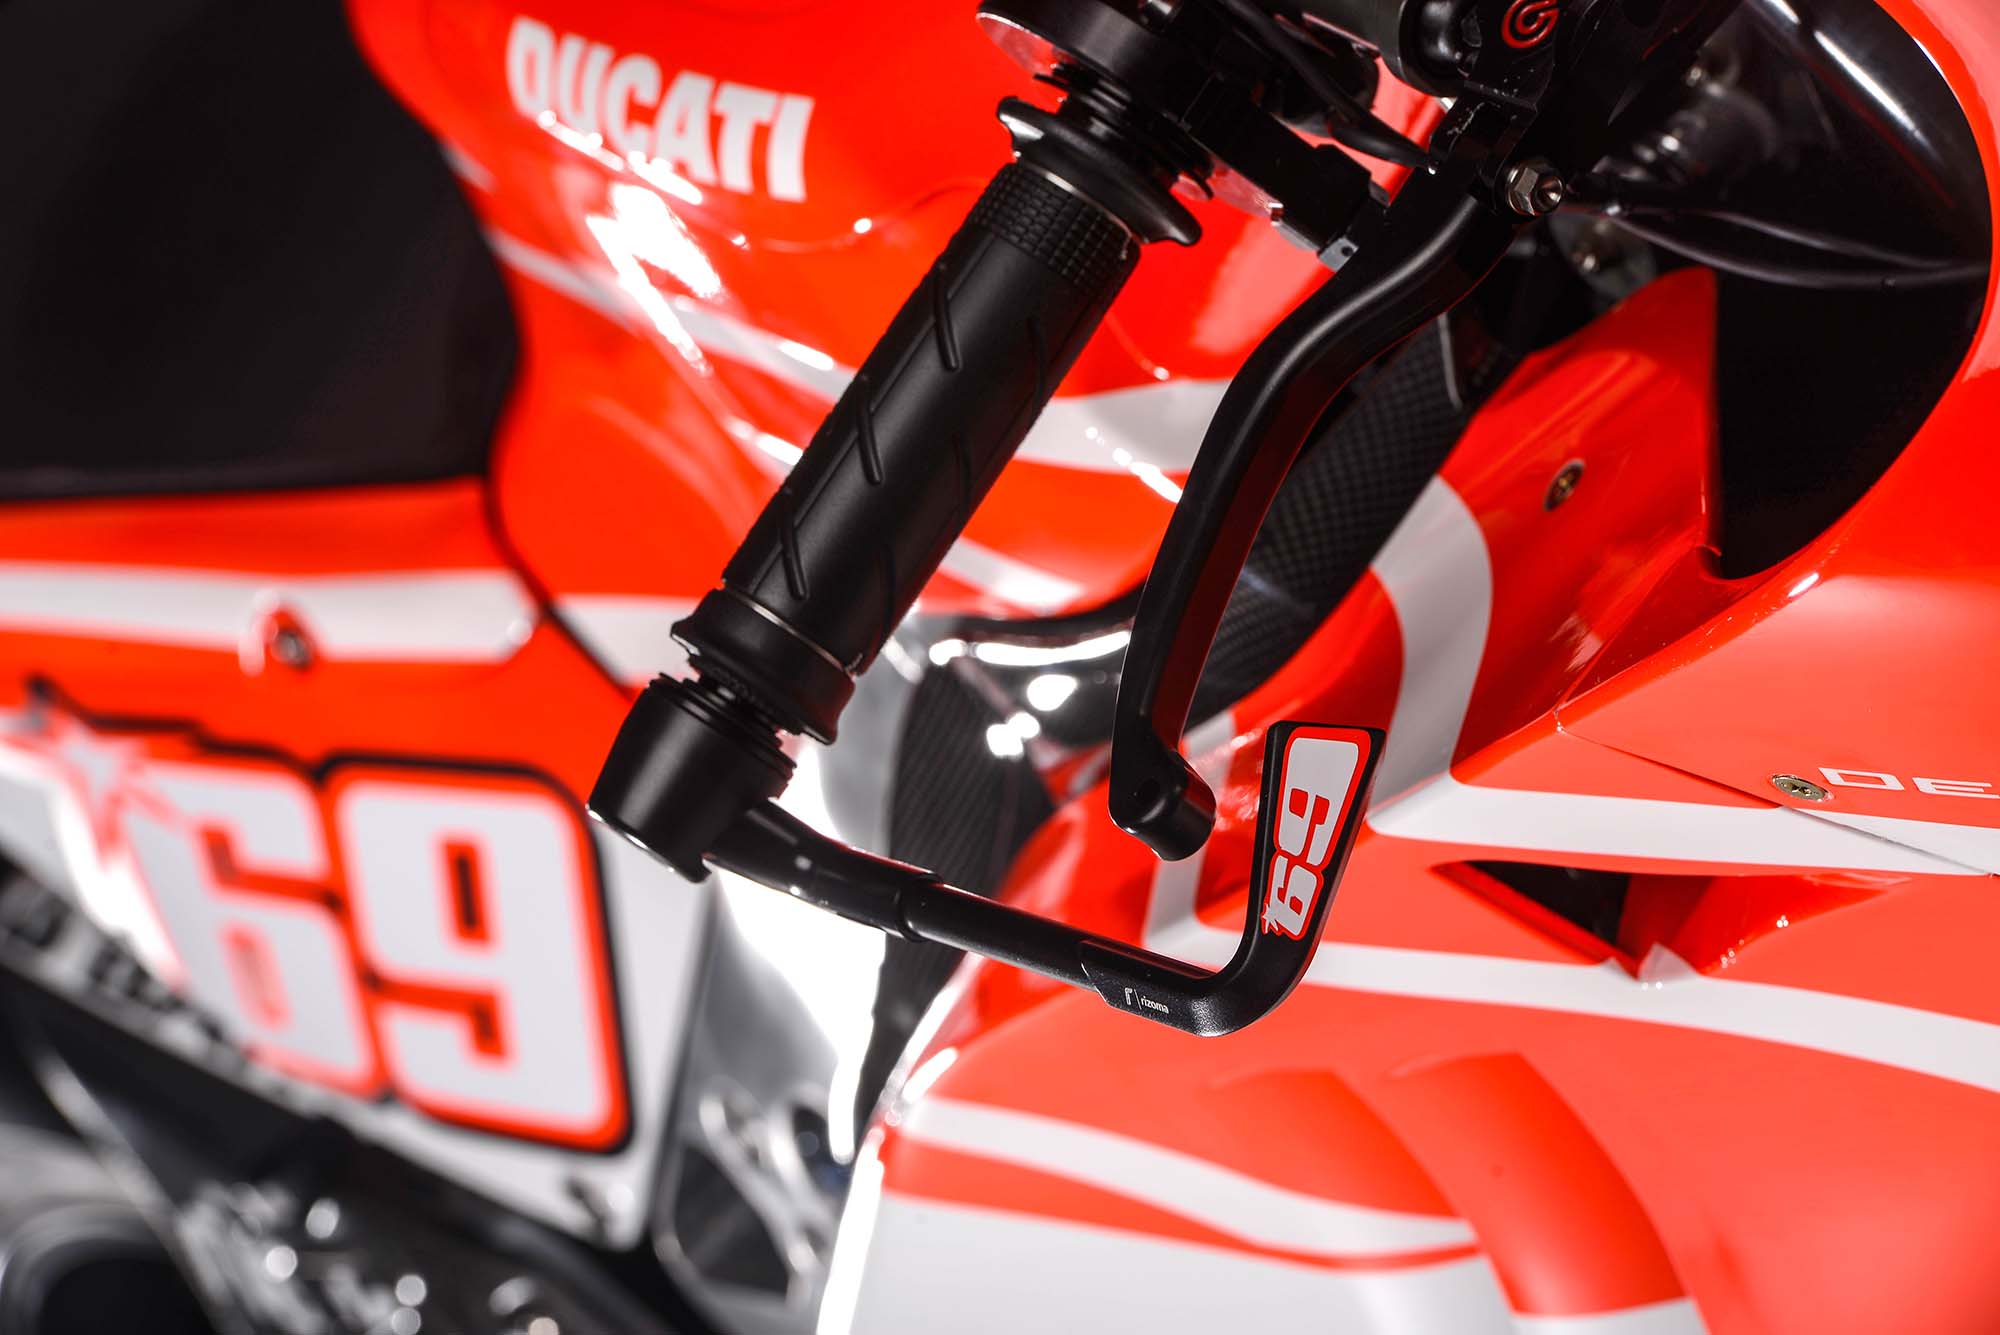 MotoGP, Gambar terbaru Motor Ducati Desmosedici GP13: Spesifikasi dan Foto Motor Ducati Desmosedici GP13